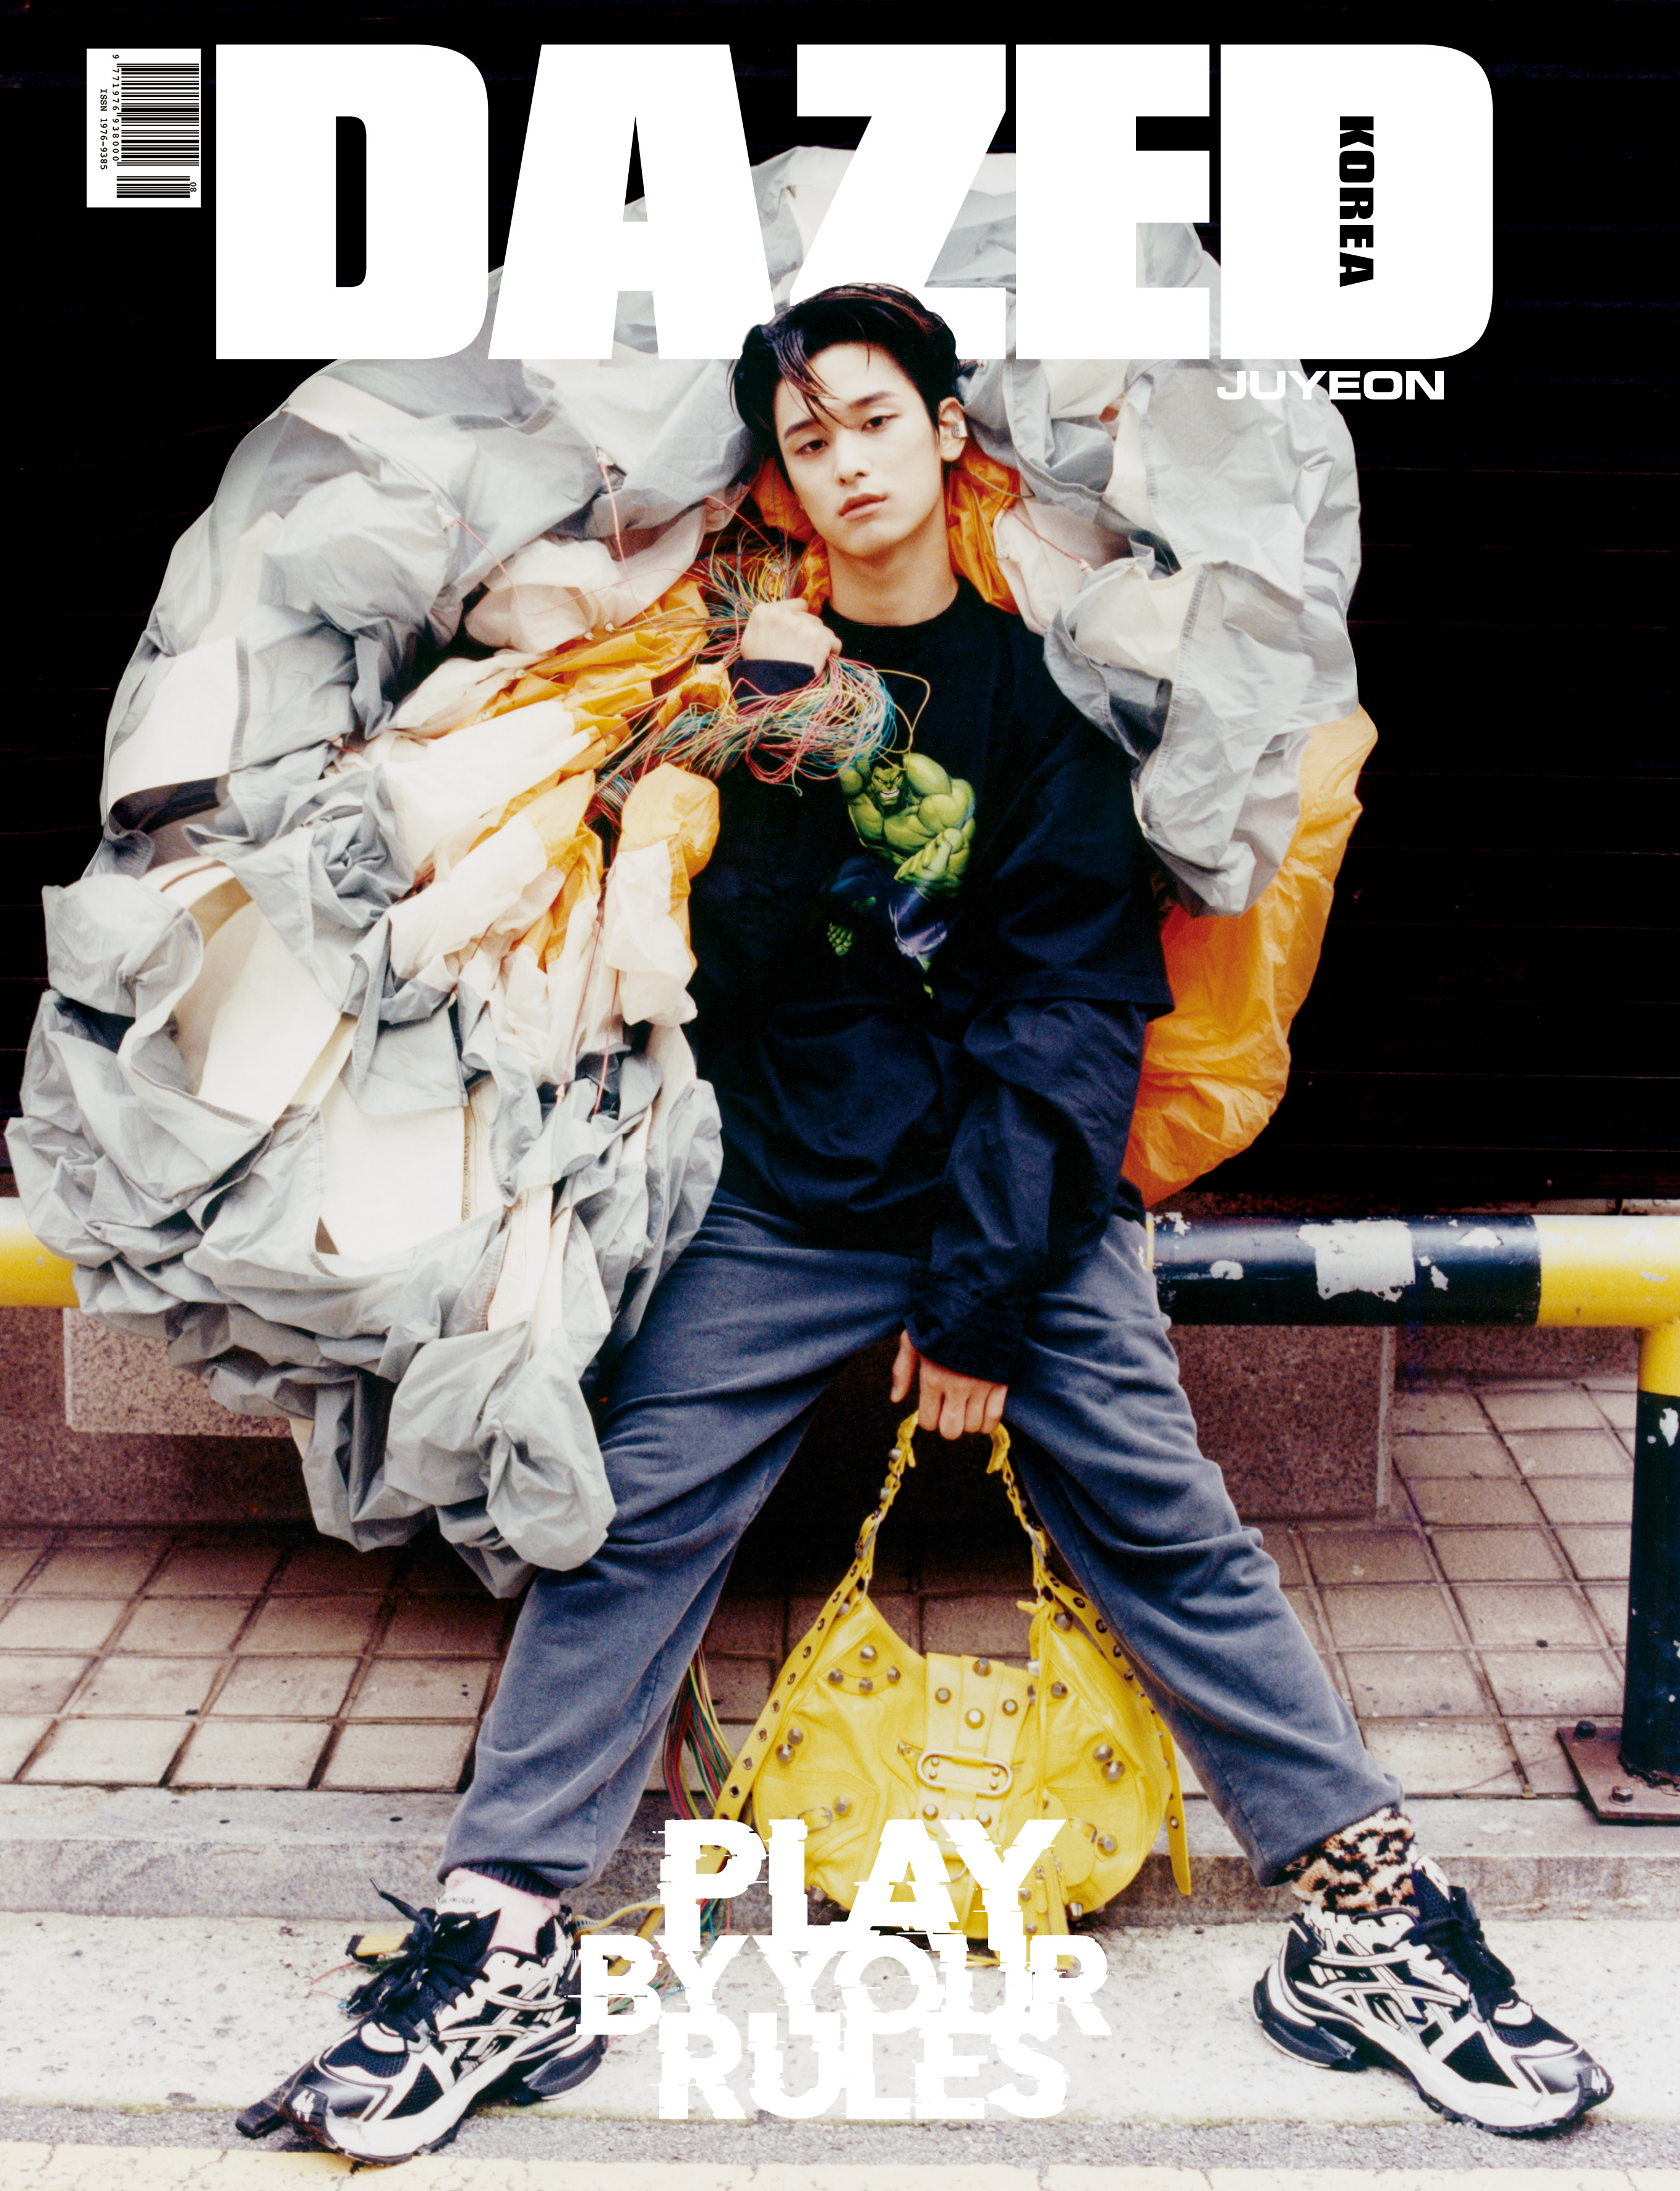 [잡지][2021-08] Dazed & Confused Korea 데이즈드 앤 컨퓨즈드 코리아 월간 B형 : 8월 [2021] (표지 : 더보이즈 주연)